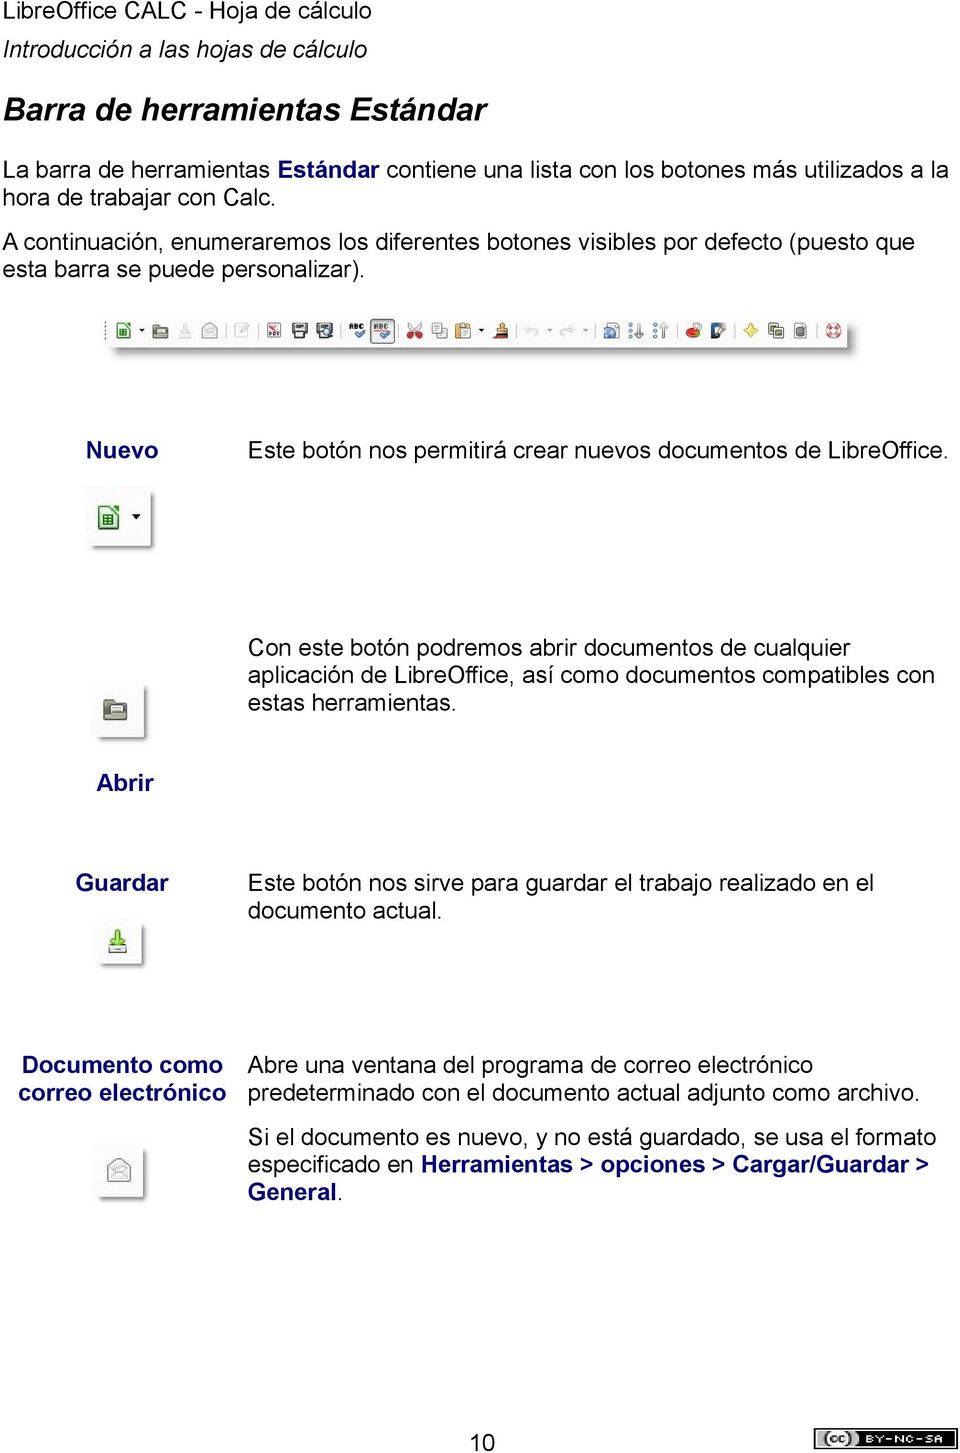 Con este botón podremos abrir documentos de cualquier aplicación de LibreOffice, así como documentos compatibles con estas herramientas.